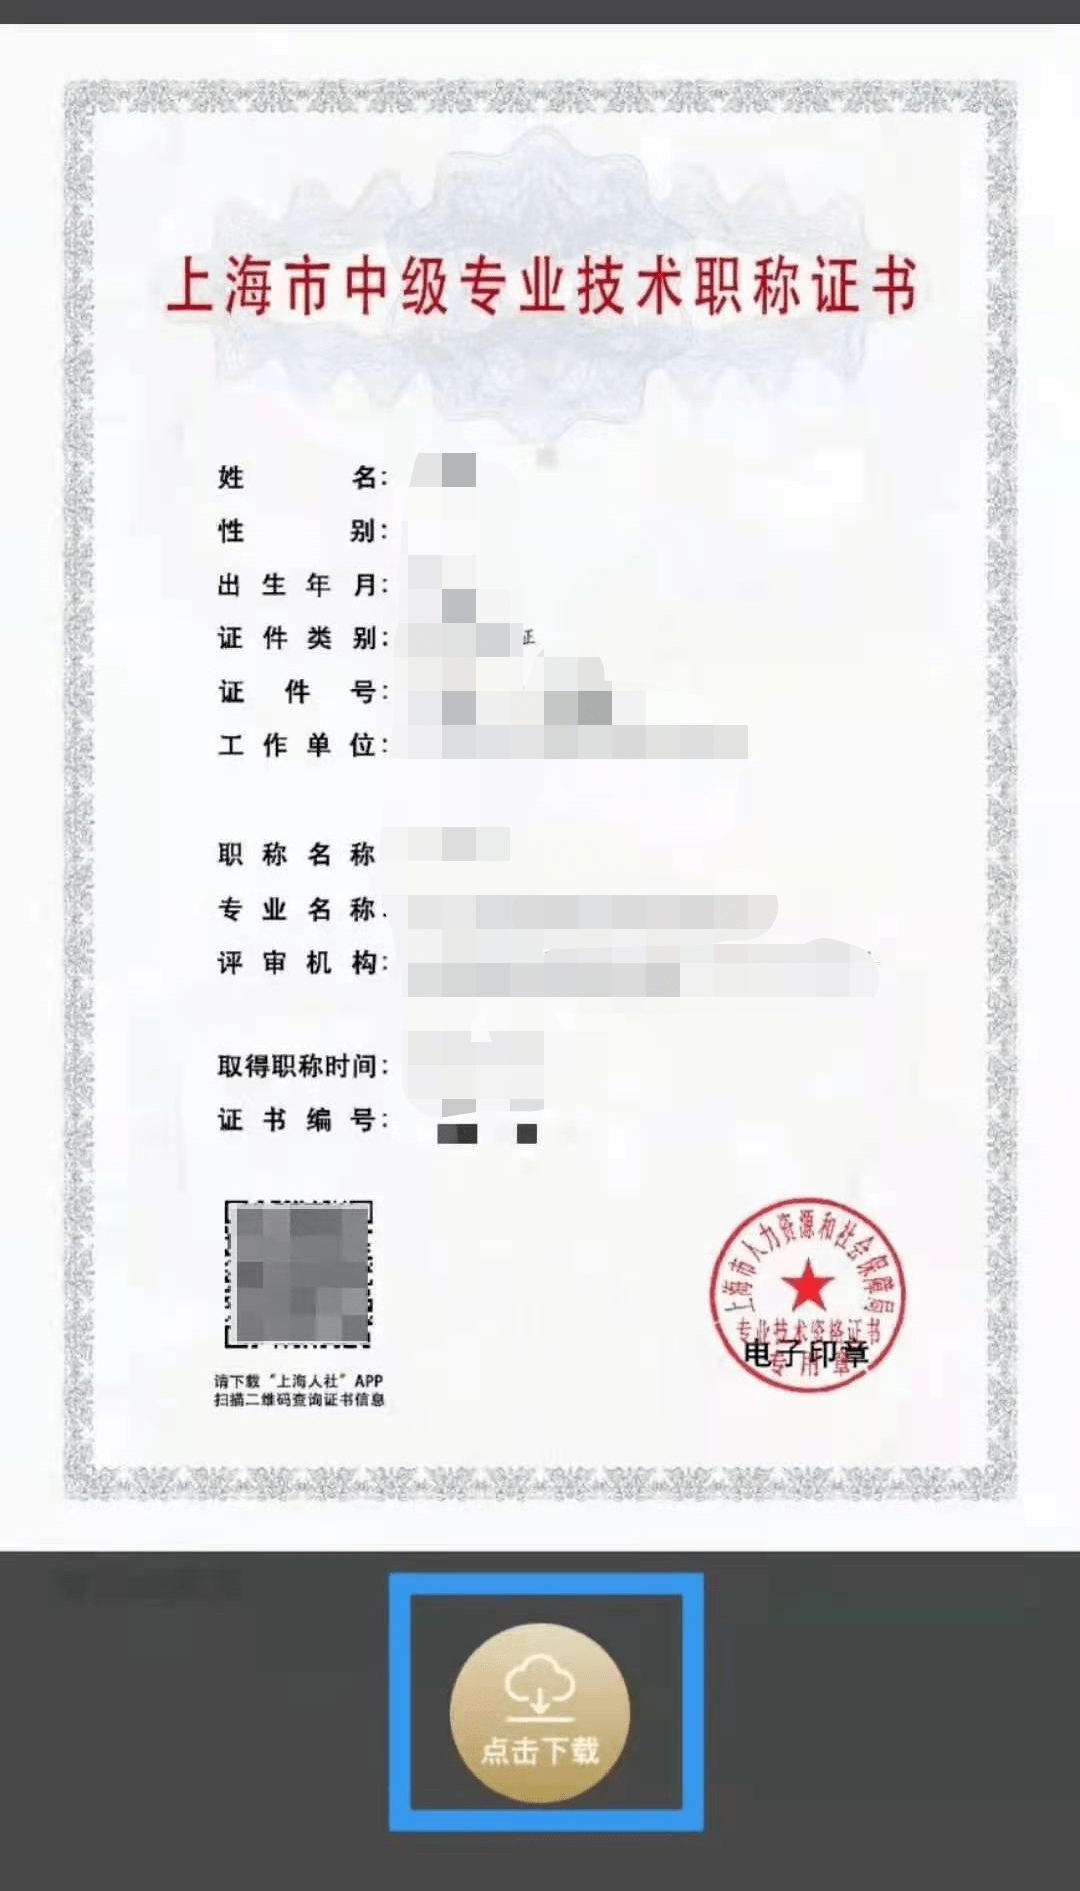 上海市工程系列城市管理专业高级职称电子证书开始下载啦